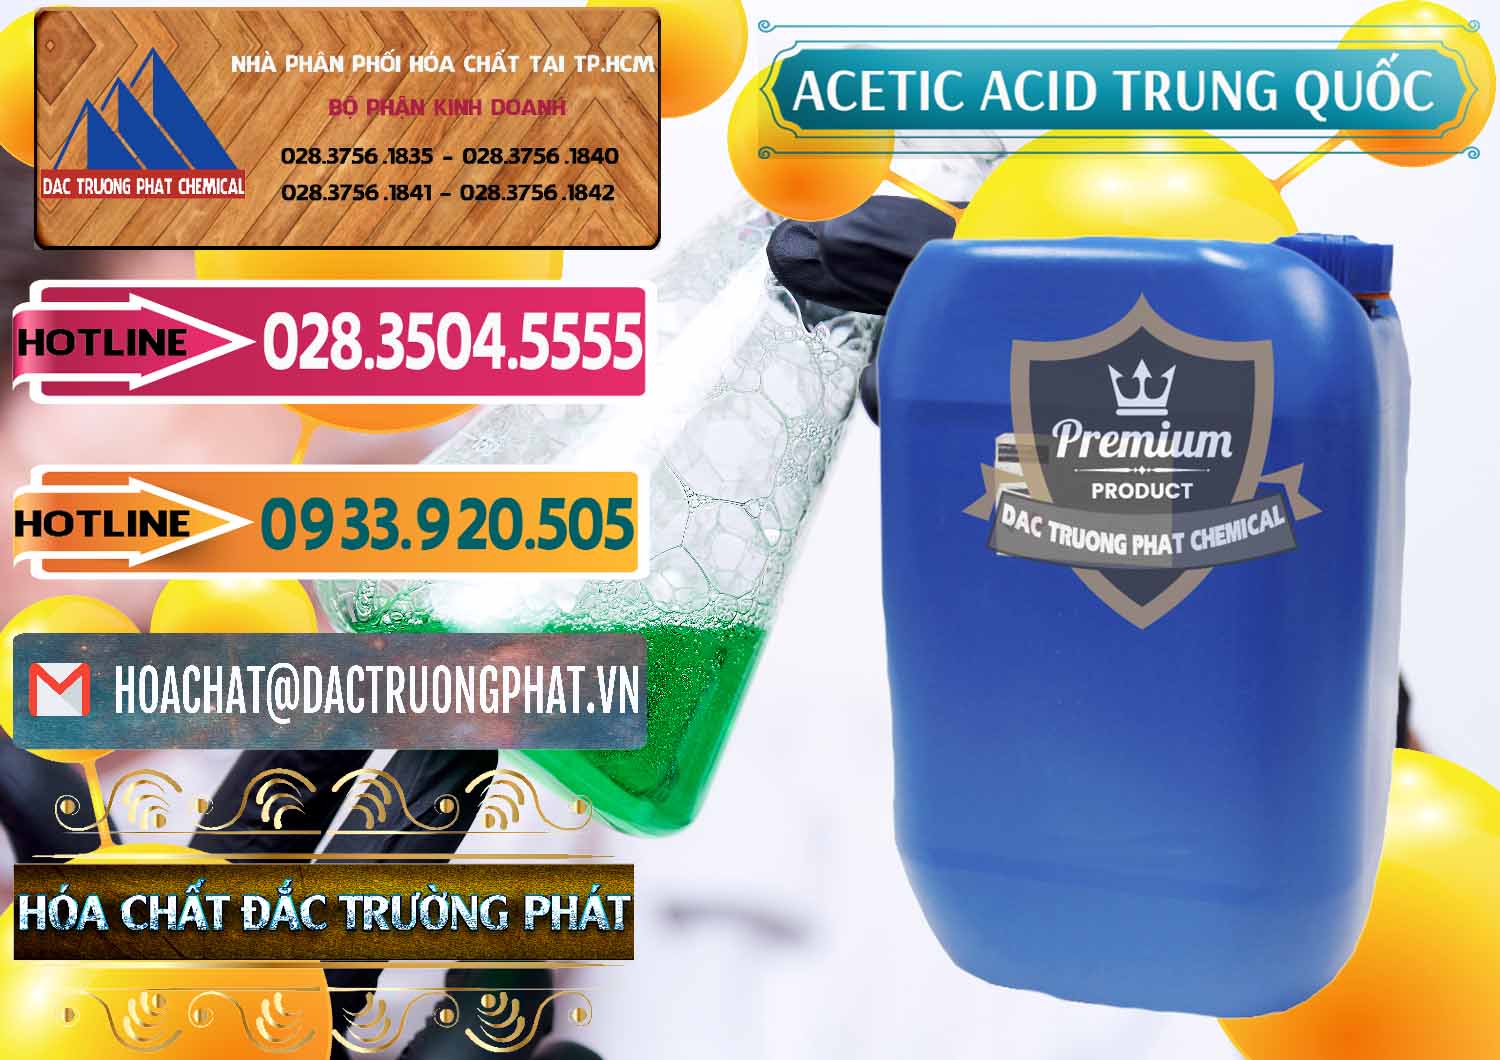 Công ty bán và cung ứng Acetic Acid – Axit Acetic Trung Quốc China - 0358 - Nhà cung cấp & phân phối hóa chất tại TP.HCM - dactruongphat.vn